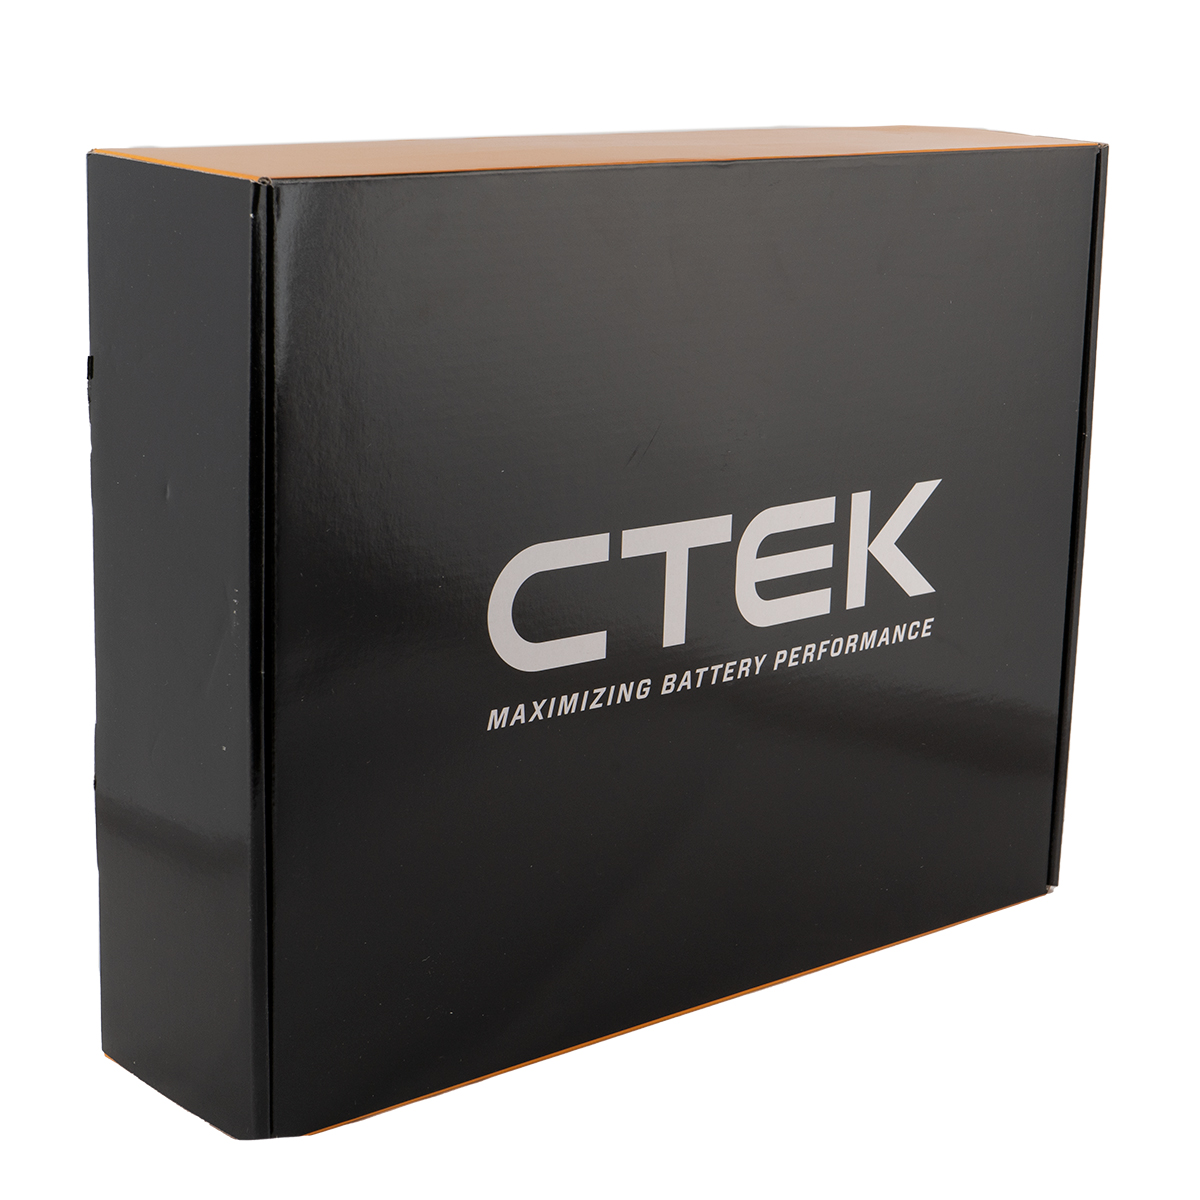 CTEK PRO25SE EU Batterie Ladegerät 12V 25A für Blei- und Lithuim Batterien